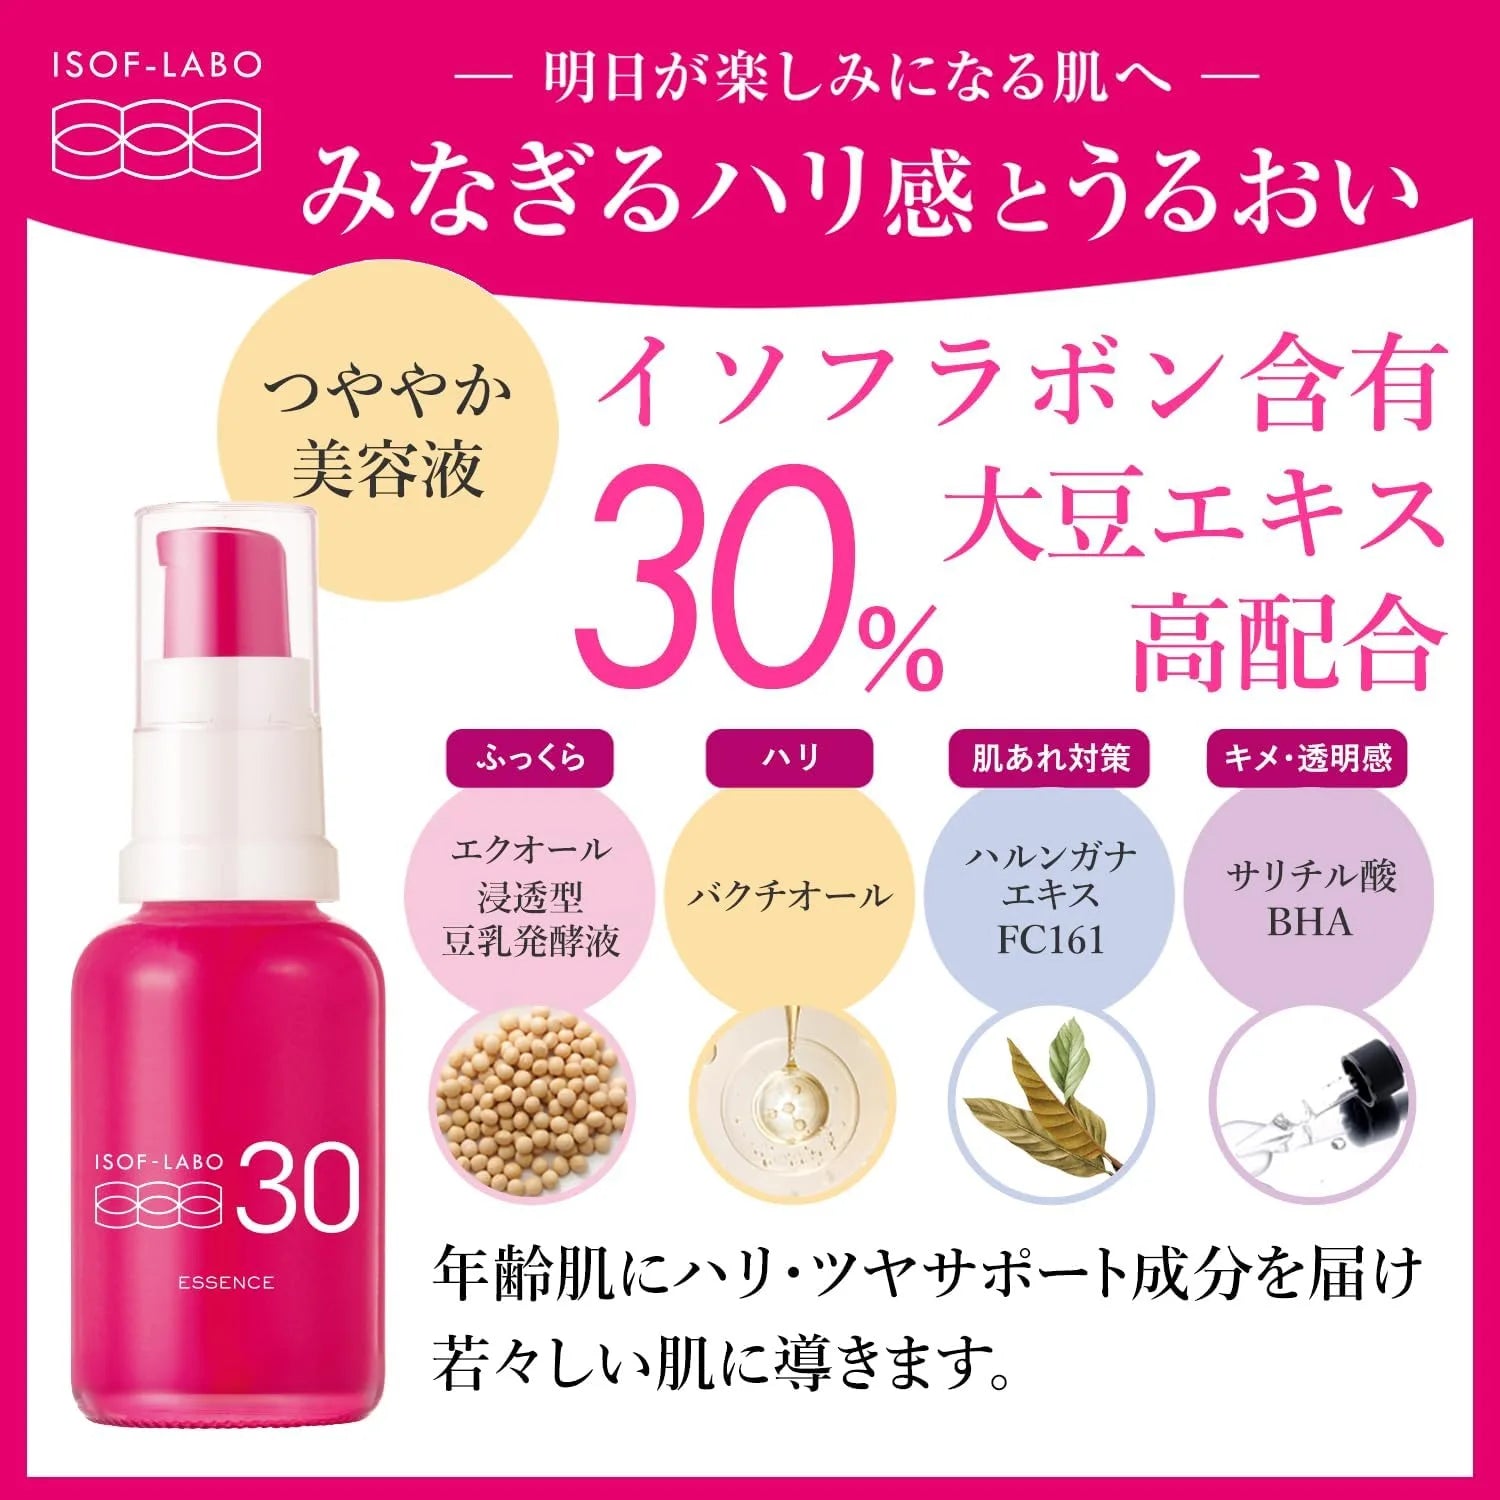 Meishoku ISOF-LABO 30 Serum 30ml